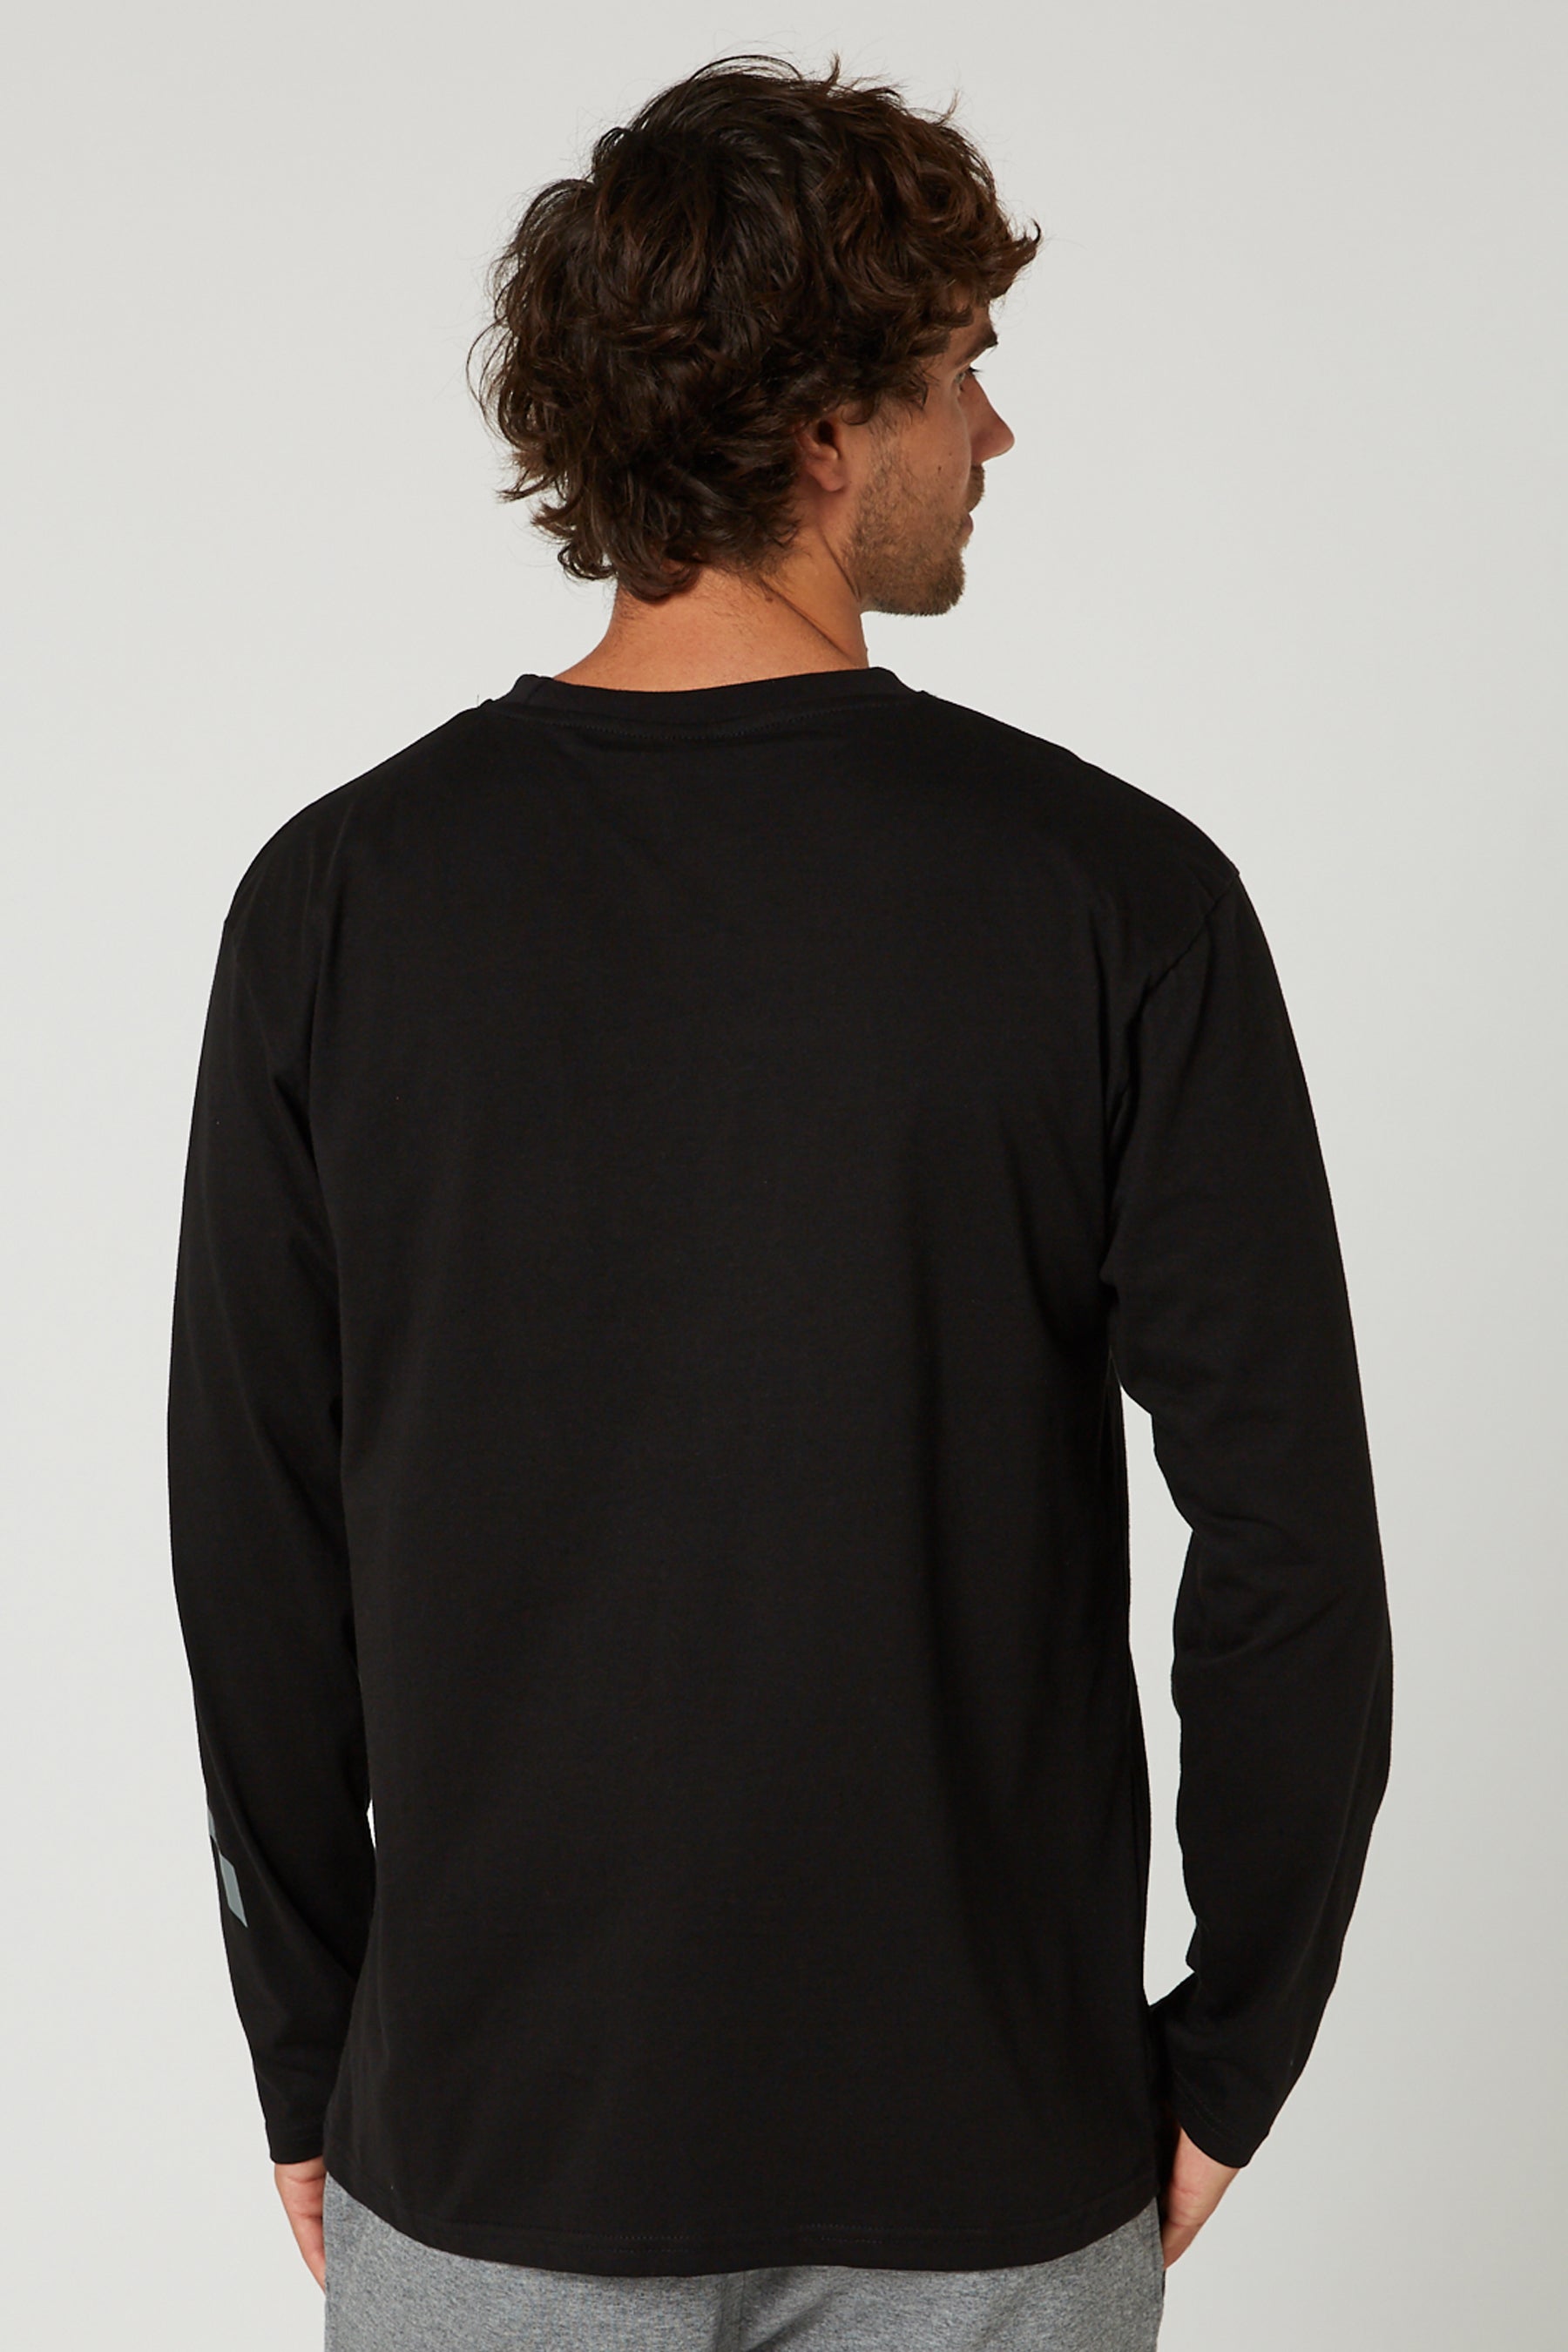 Jetpilot Techtonic L/S Mens T-Shirt - Black